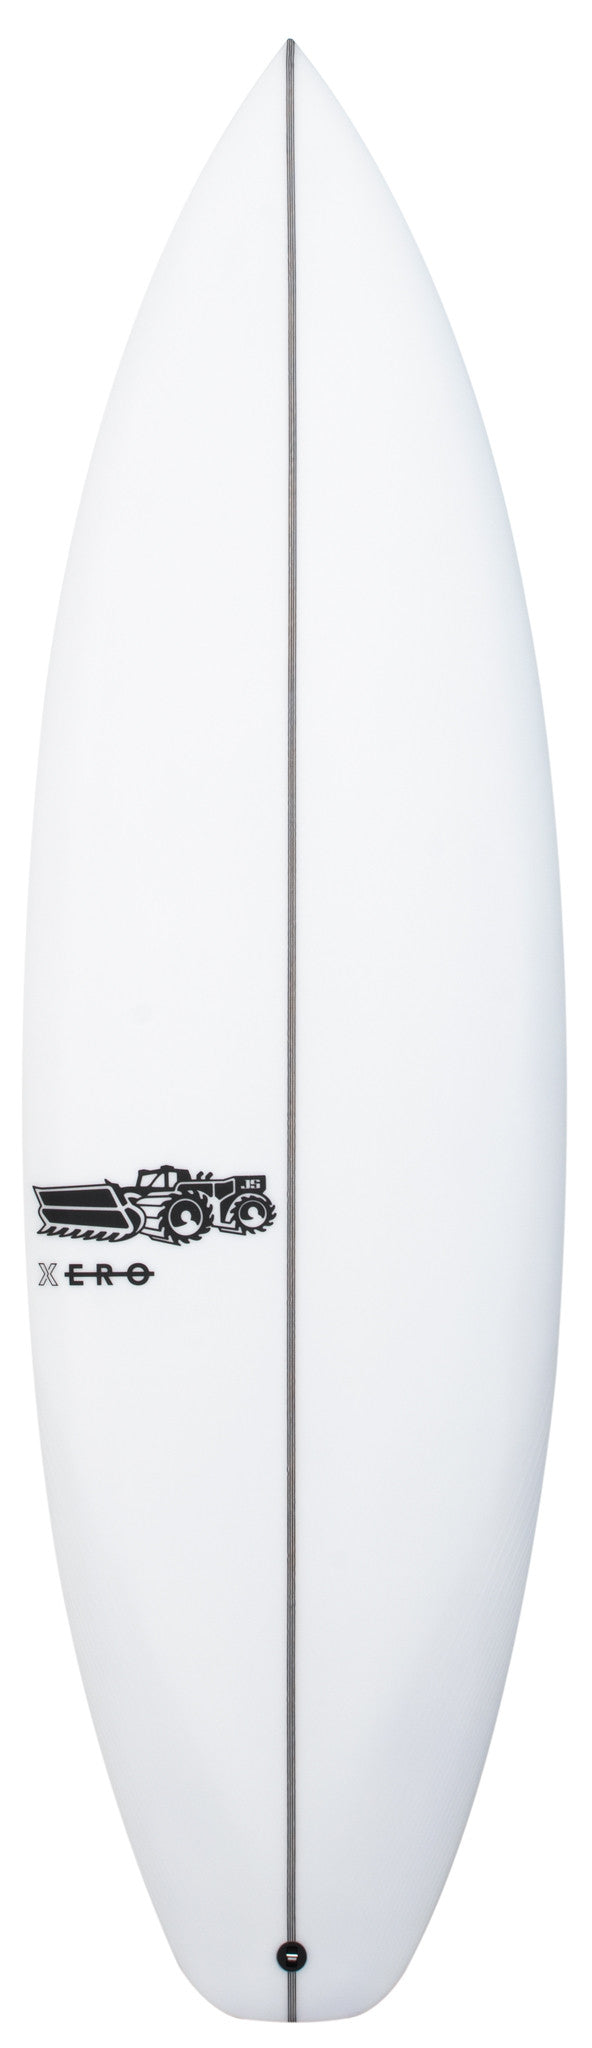 Xero Easy Rider 6'1" x 20 3/4" X  2 7/8" - 39.00L, Squash, 3x  FCS 2 Fins, PU - ID:779497